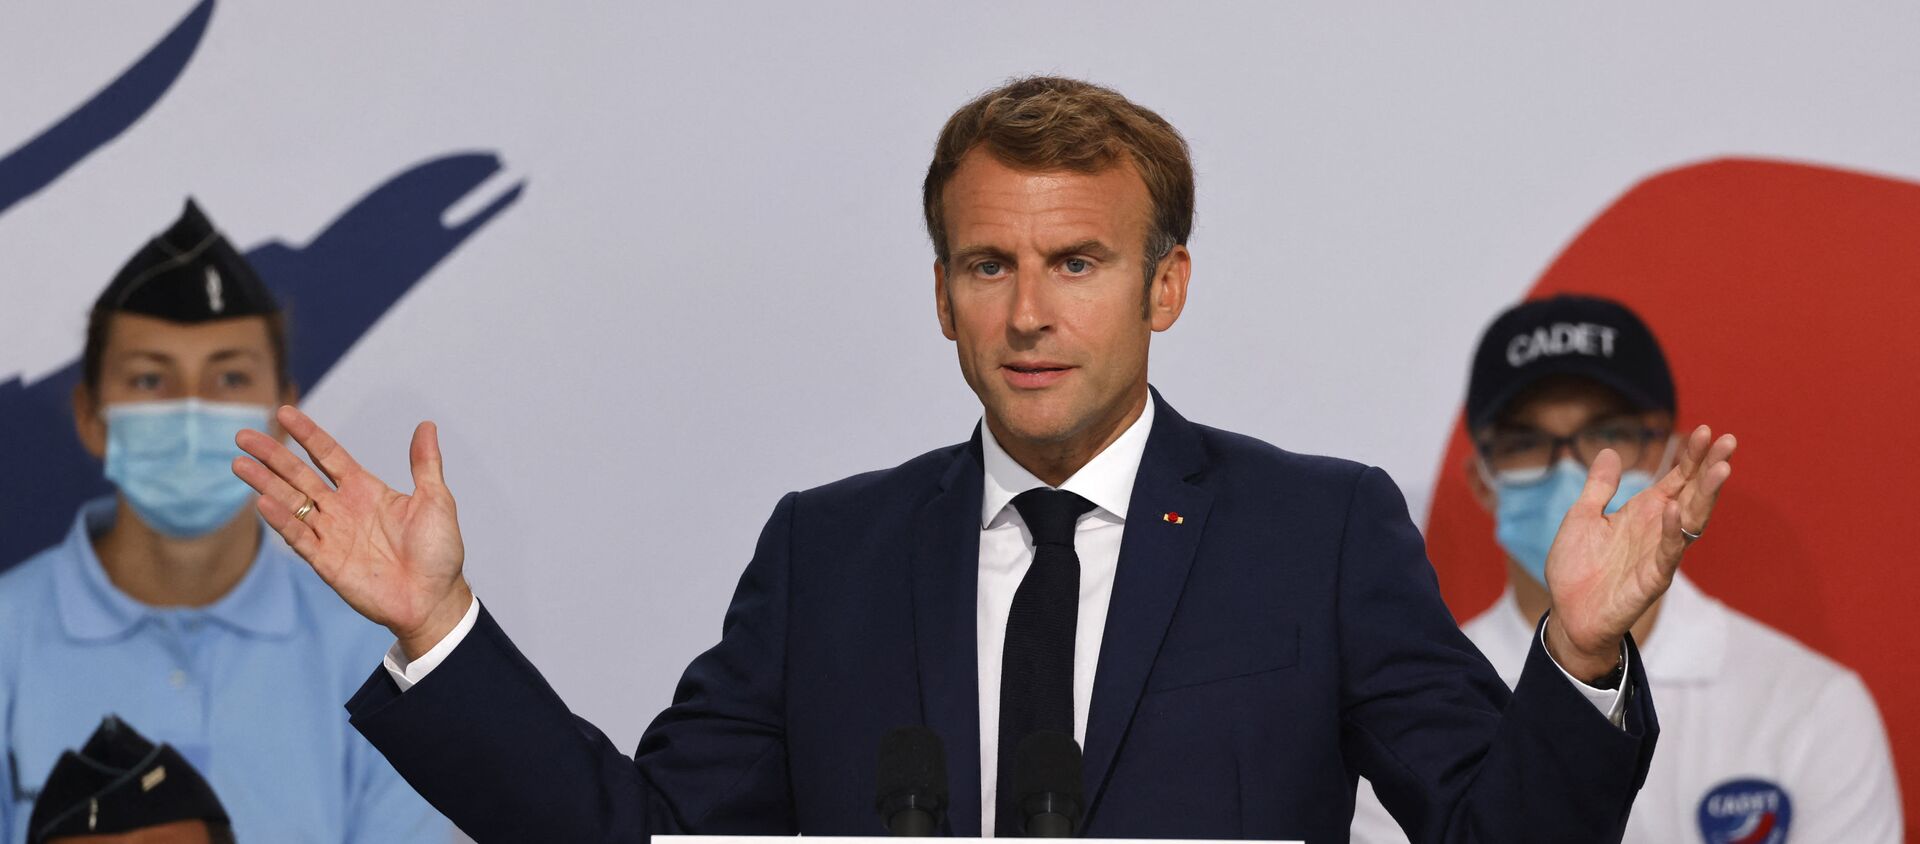 La Président de la République française Emmanuel Macron prononce le discours de clôture du Beauvau de la sécurité à Roubaix, le 12 septembre 2021 - Sputnik Afrique, 1920, 14.09.2021